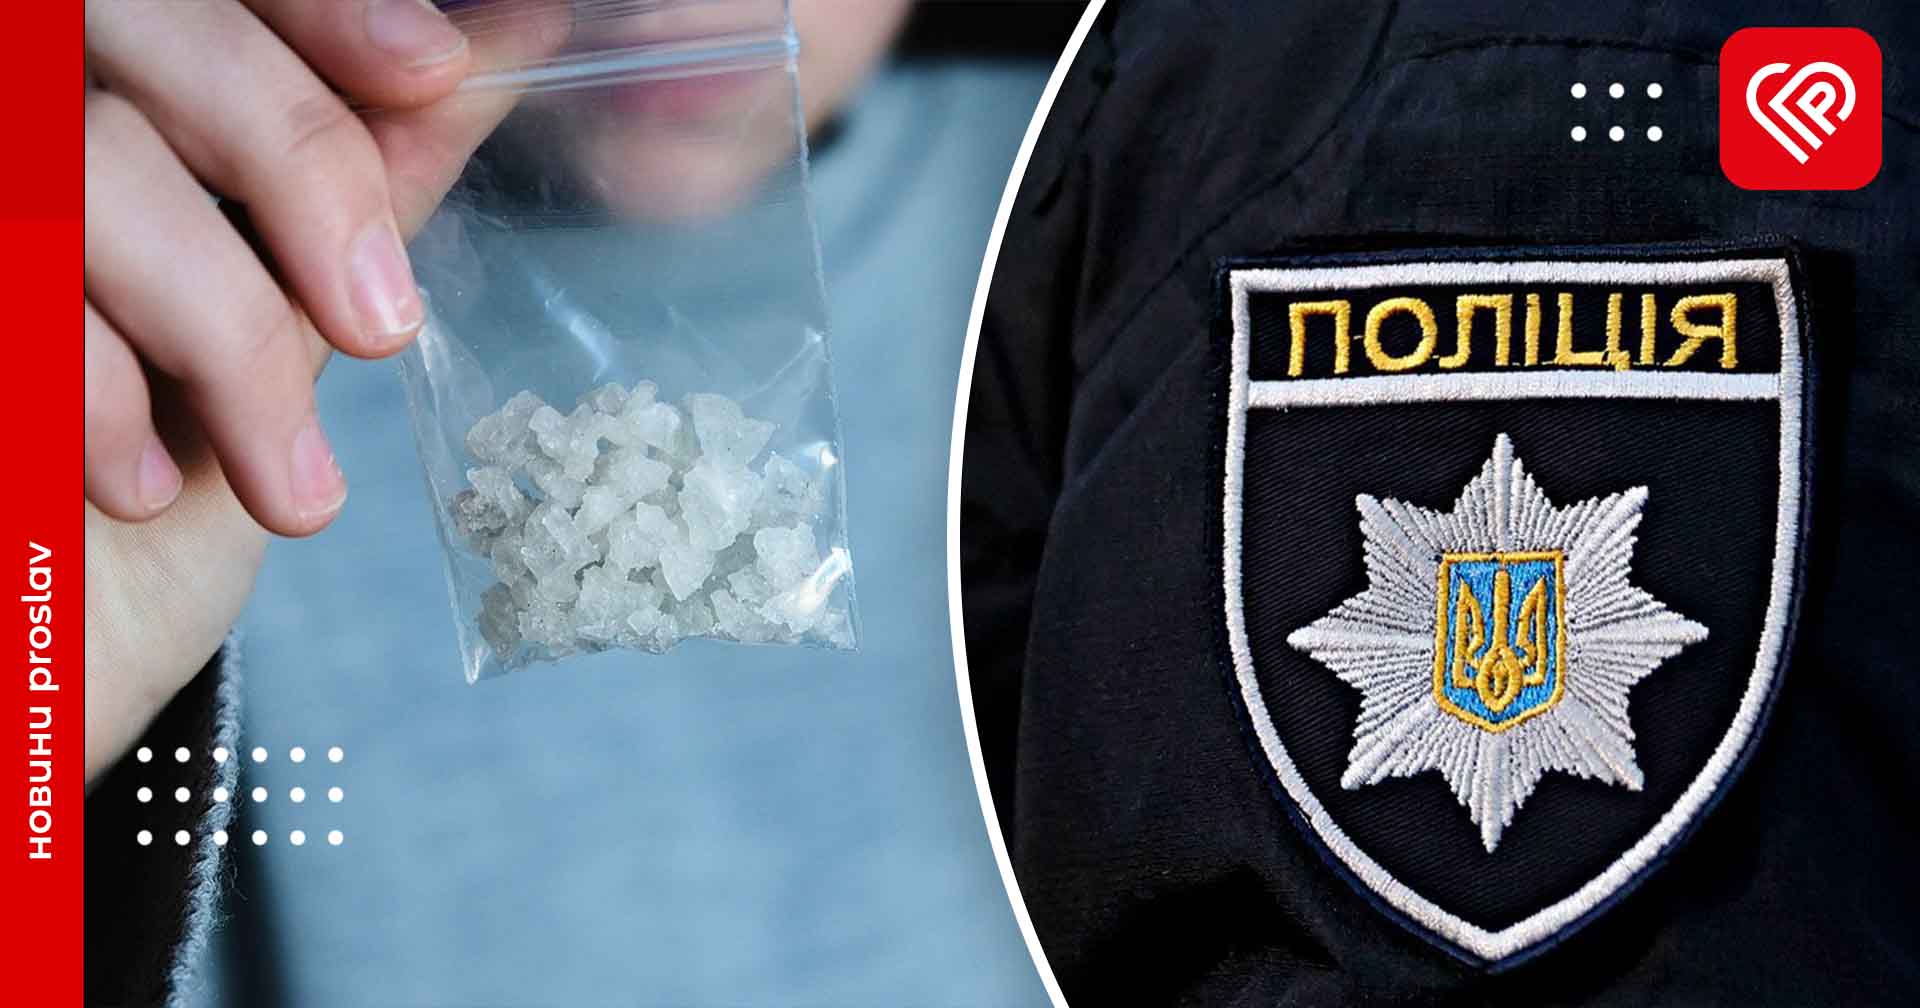 У переяславця виявили особливо небезпечний наркотик Альфа-PVP – дайджест поліції